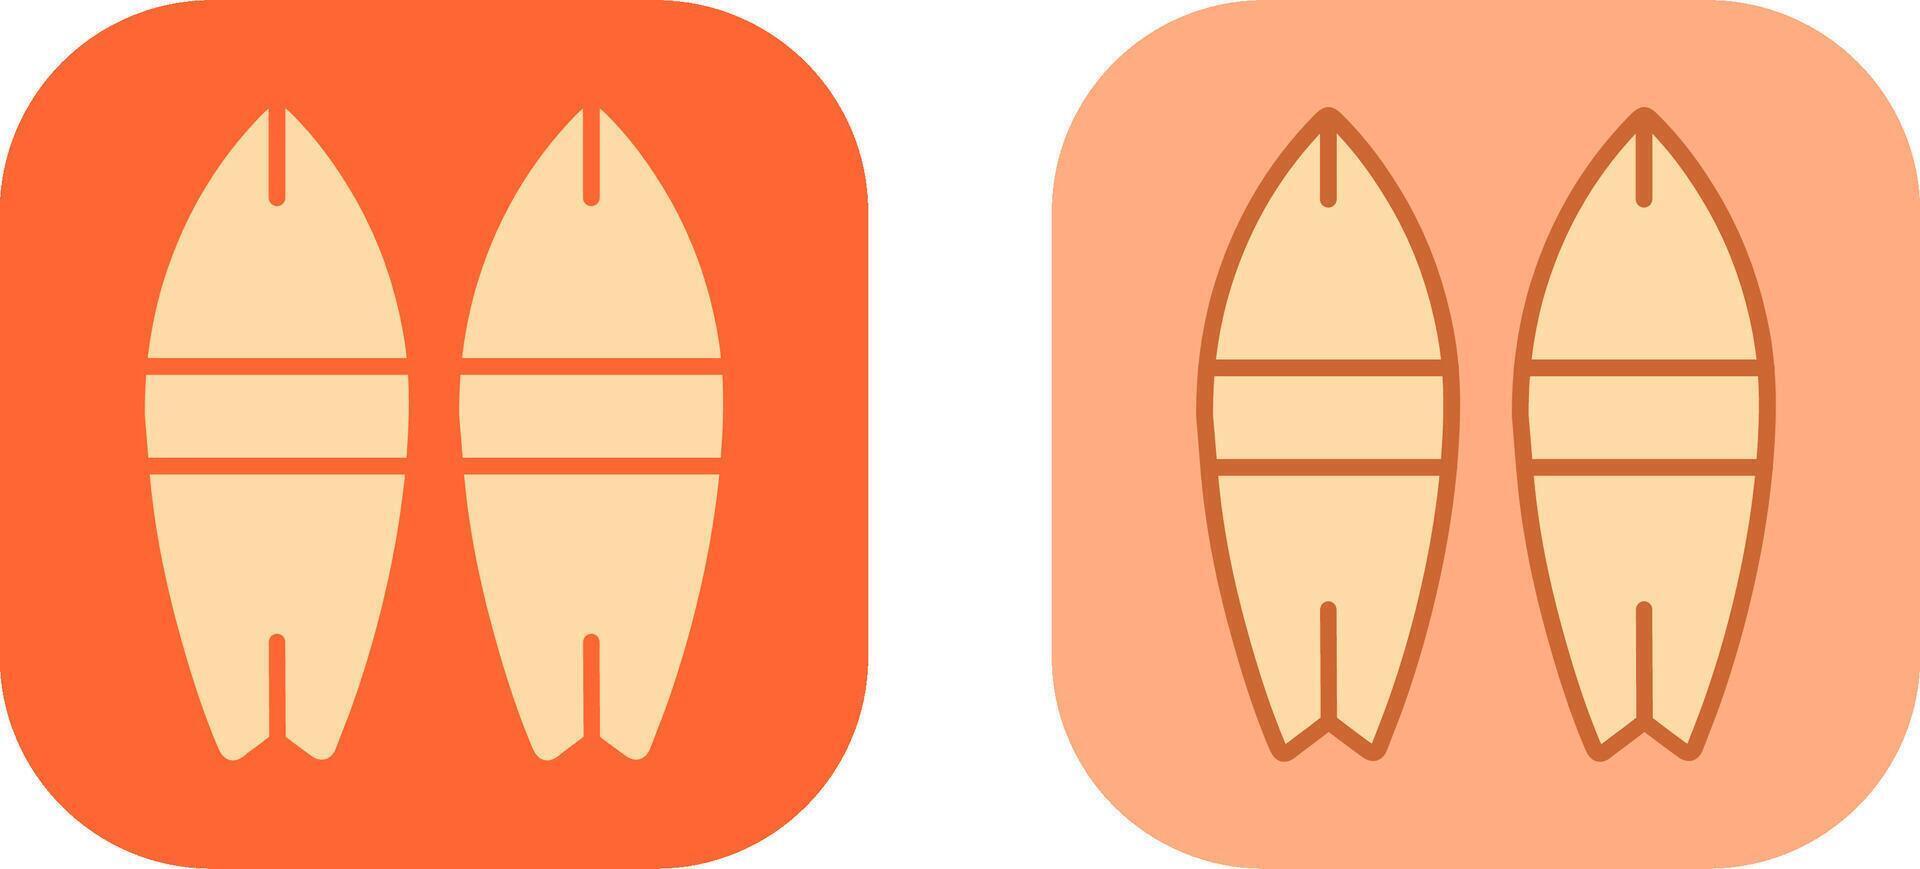 Surfbrett-Icon-Design vektor